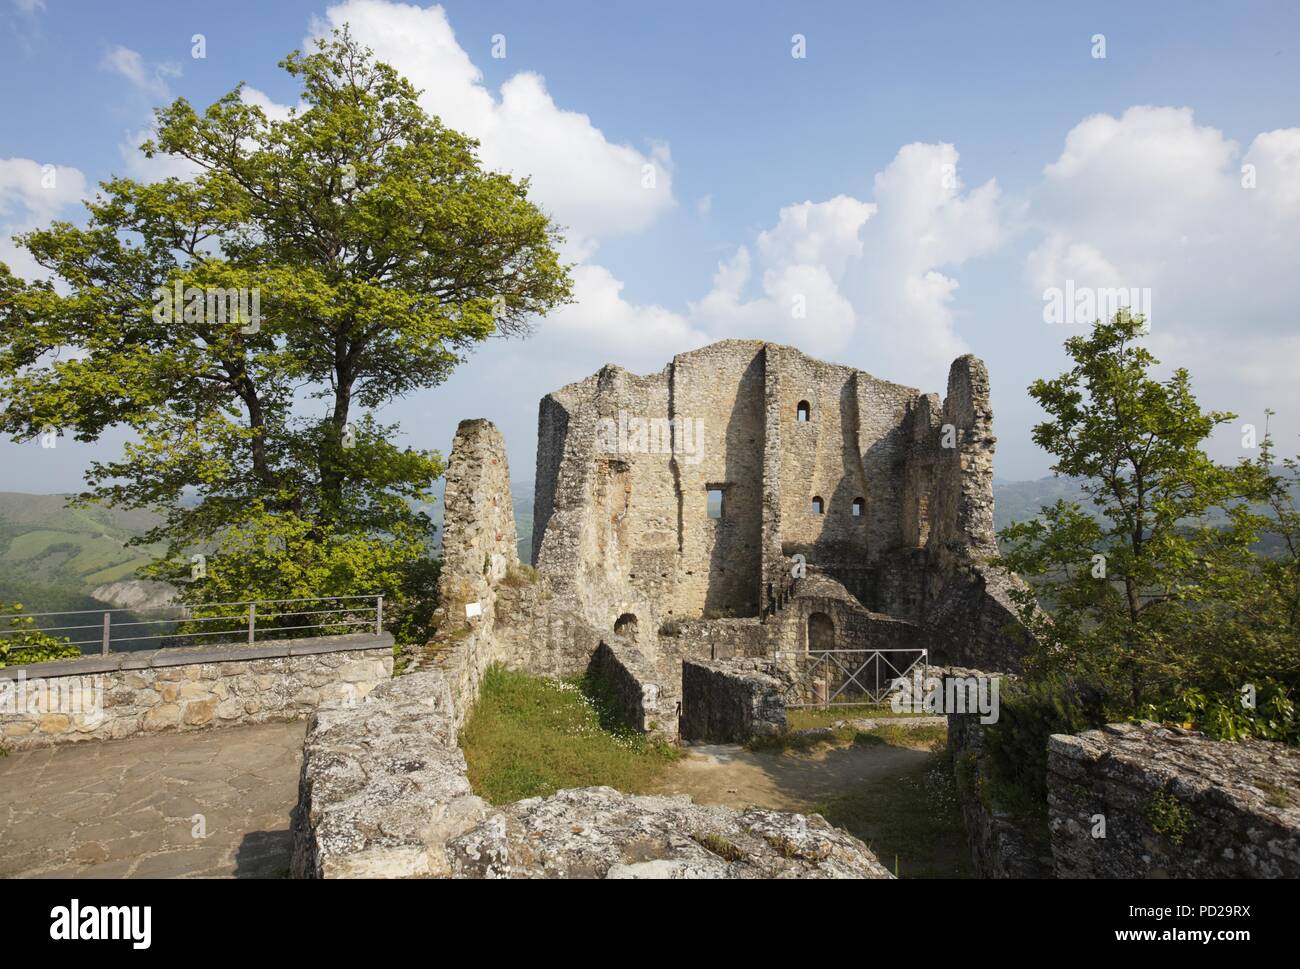 Las ruinas del castillo de Canossa, Emilia-Romaña, Italia Foto de stock